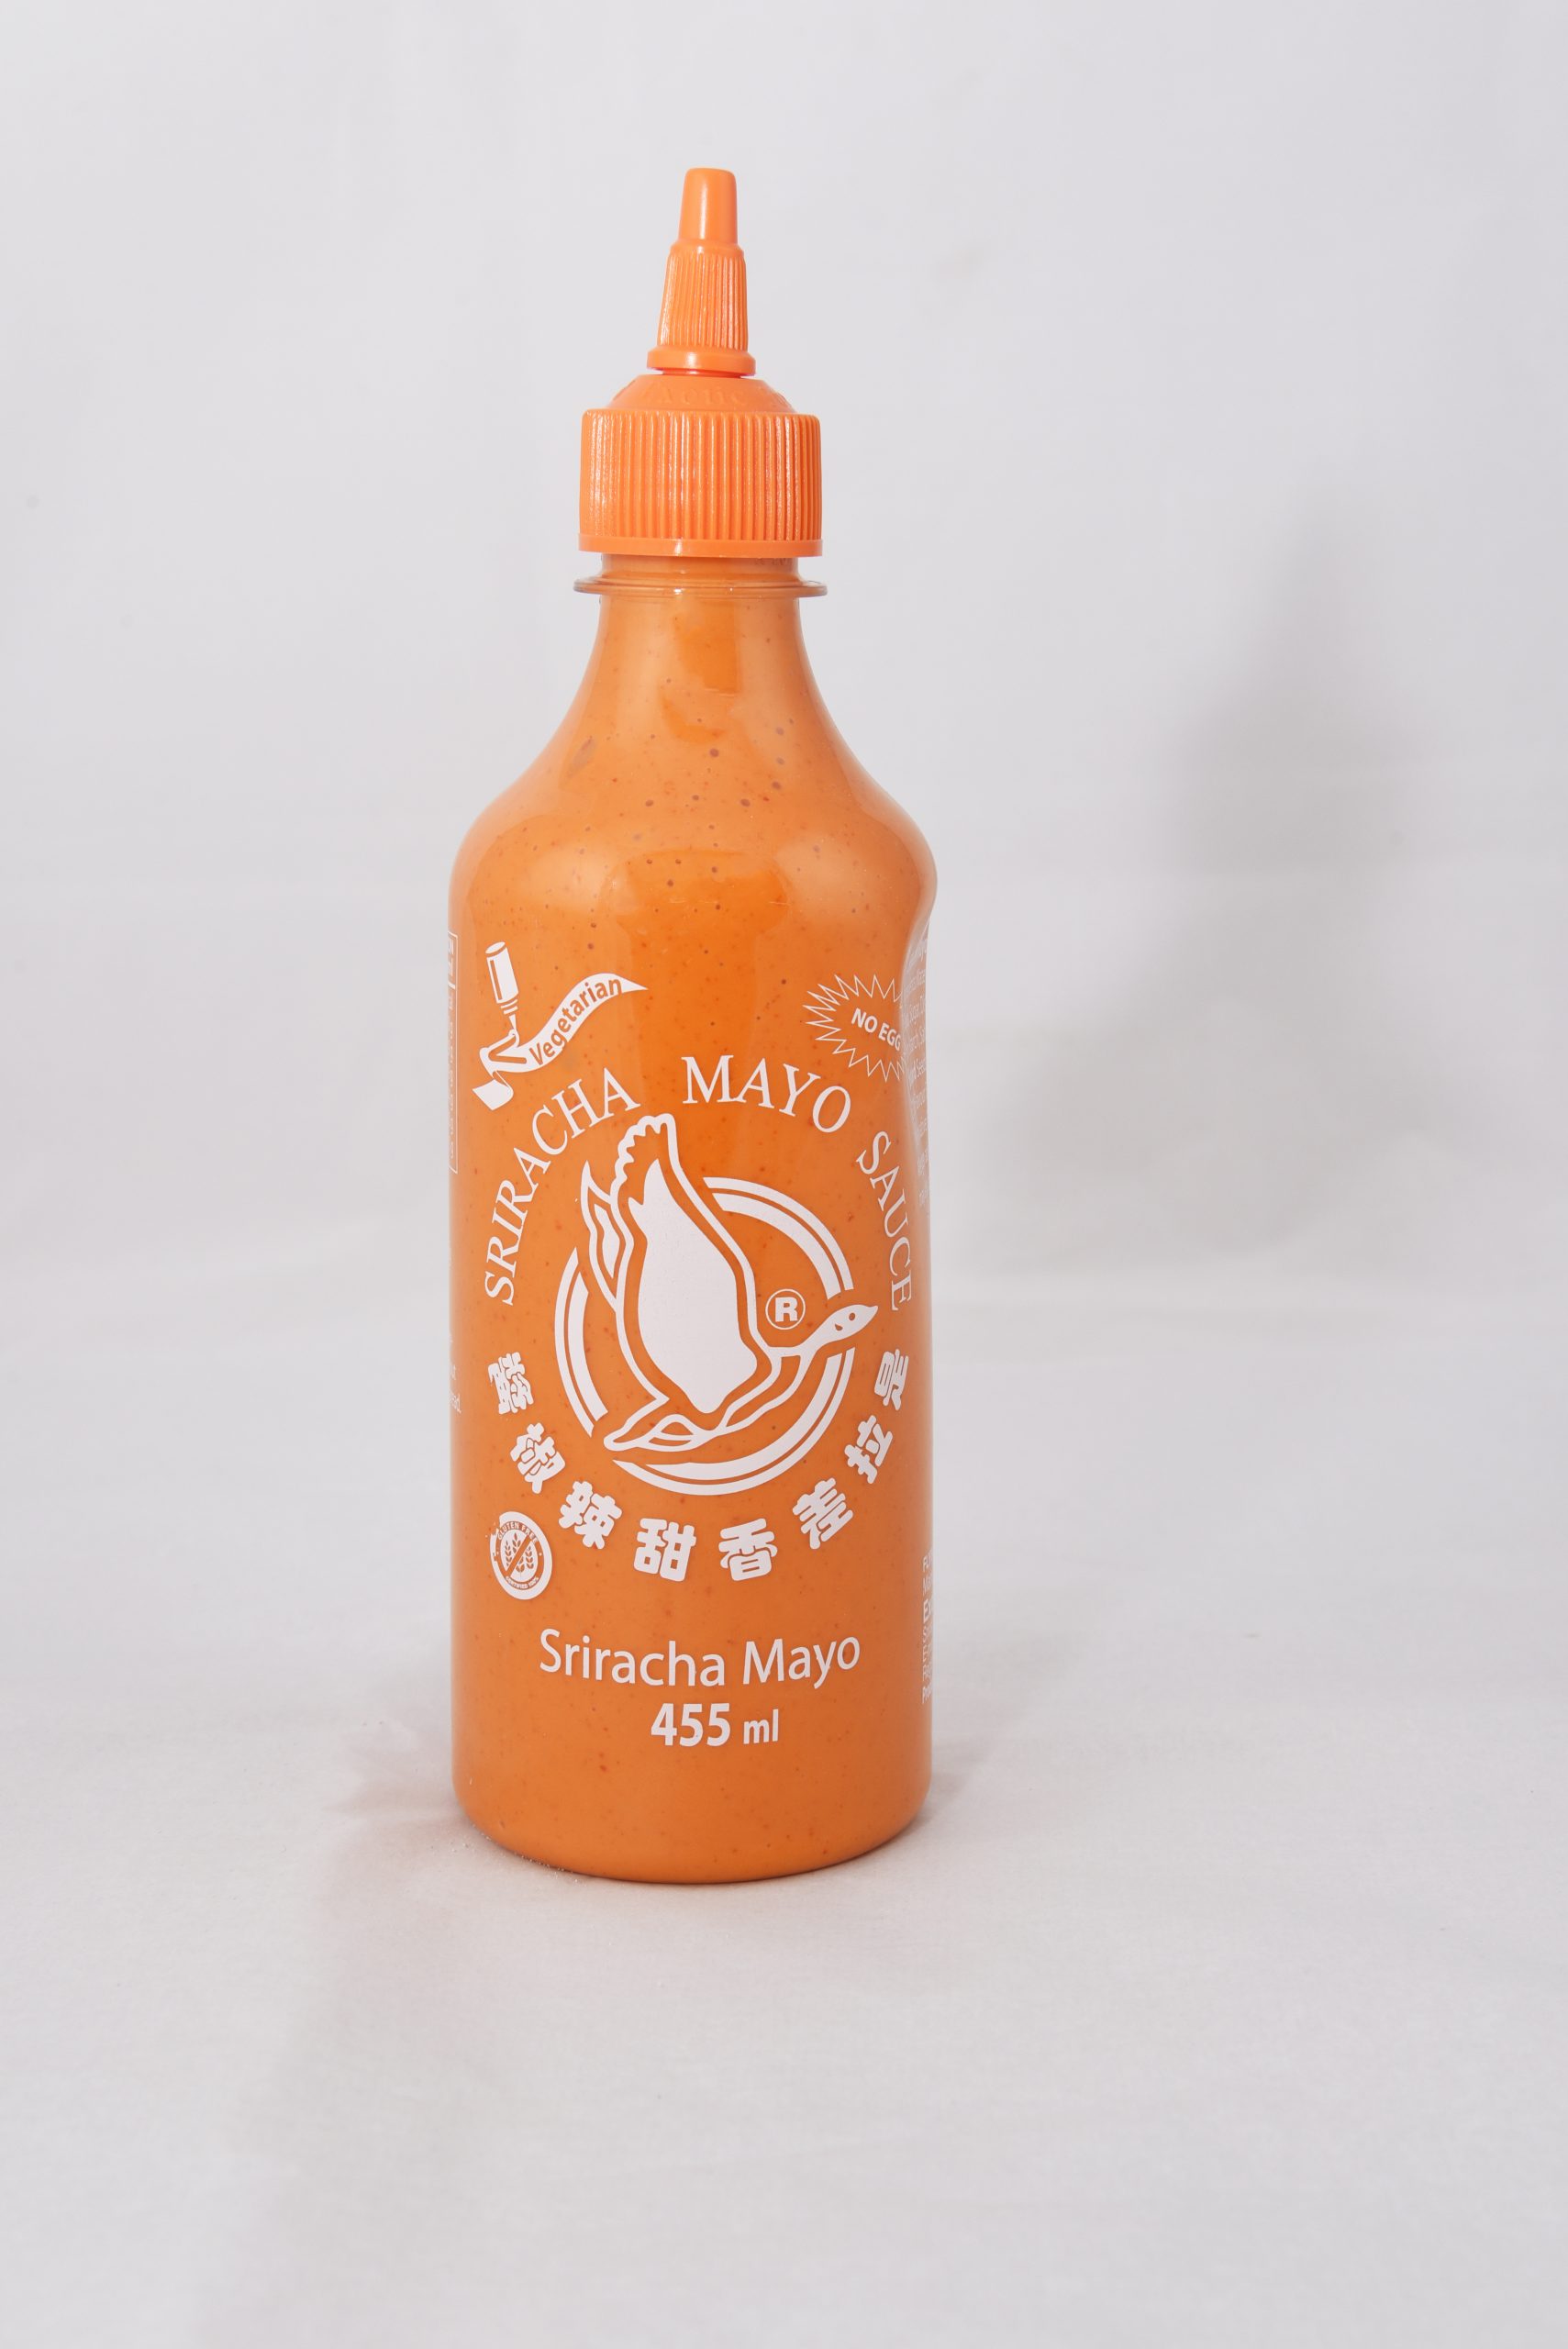 Sriracha Mayo Sauce (No Egg / Vegan) 455ml - Balsara Foods